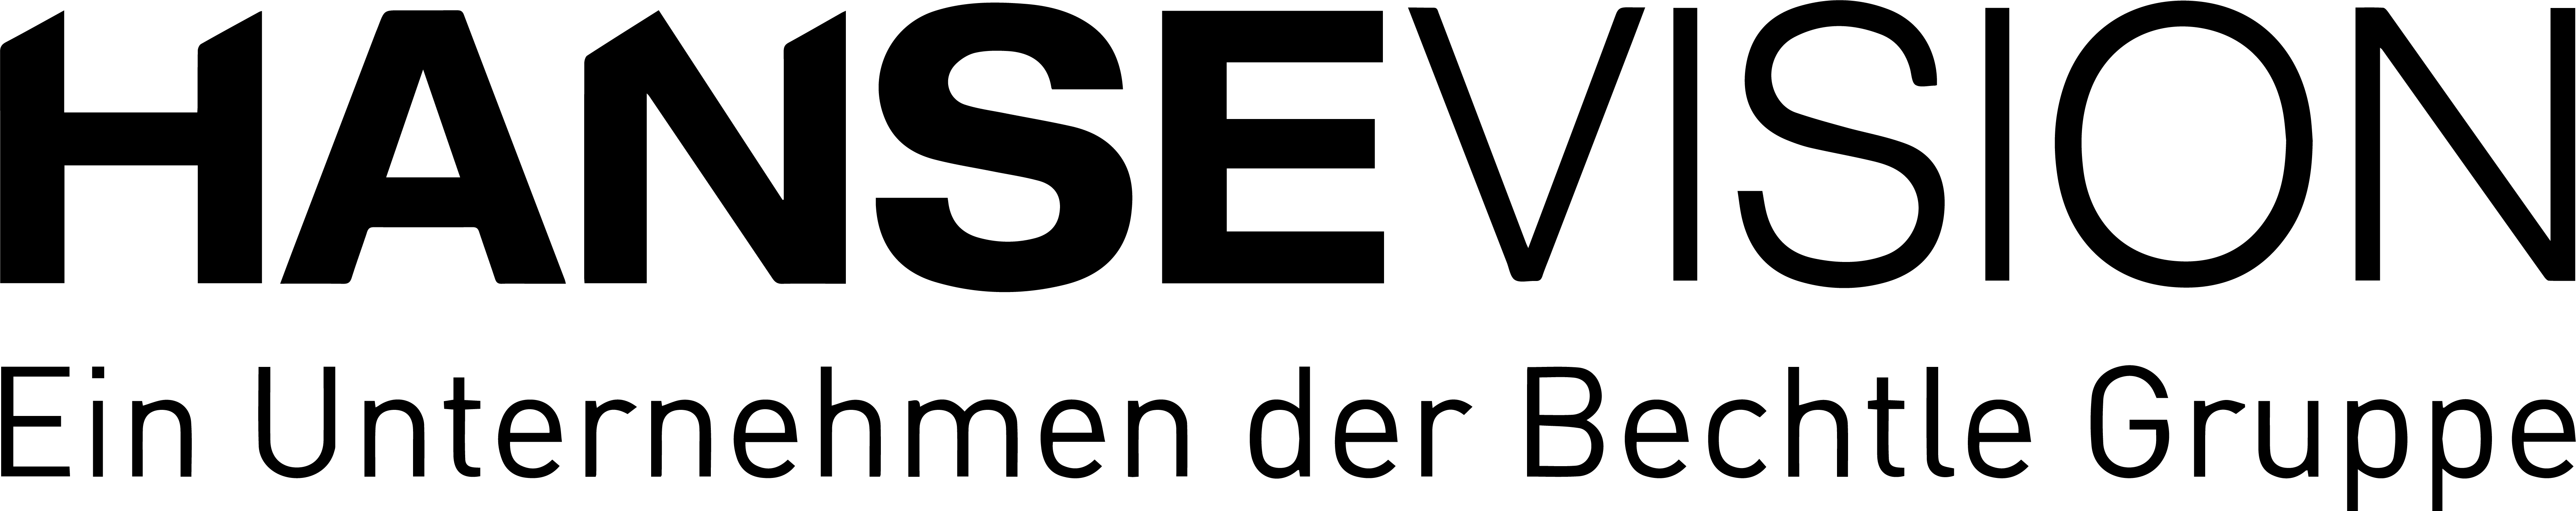 Logo_mit_Bechtle_s (3)-1